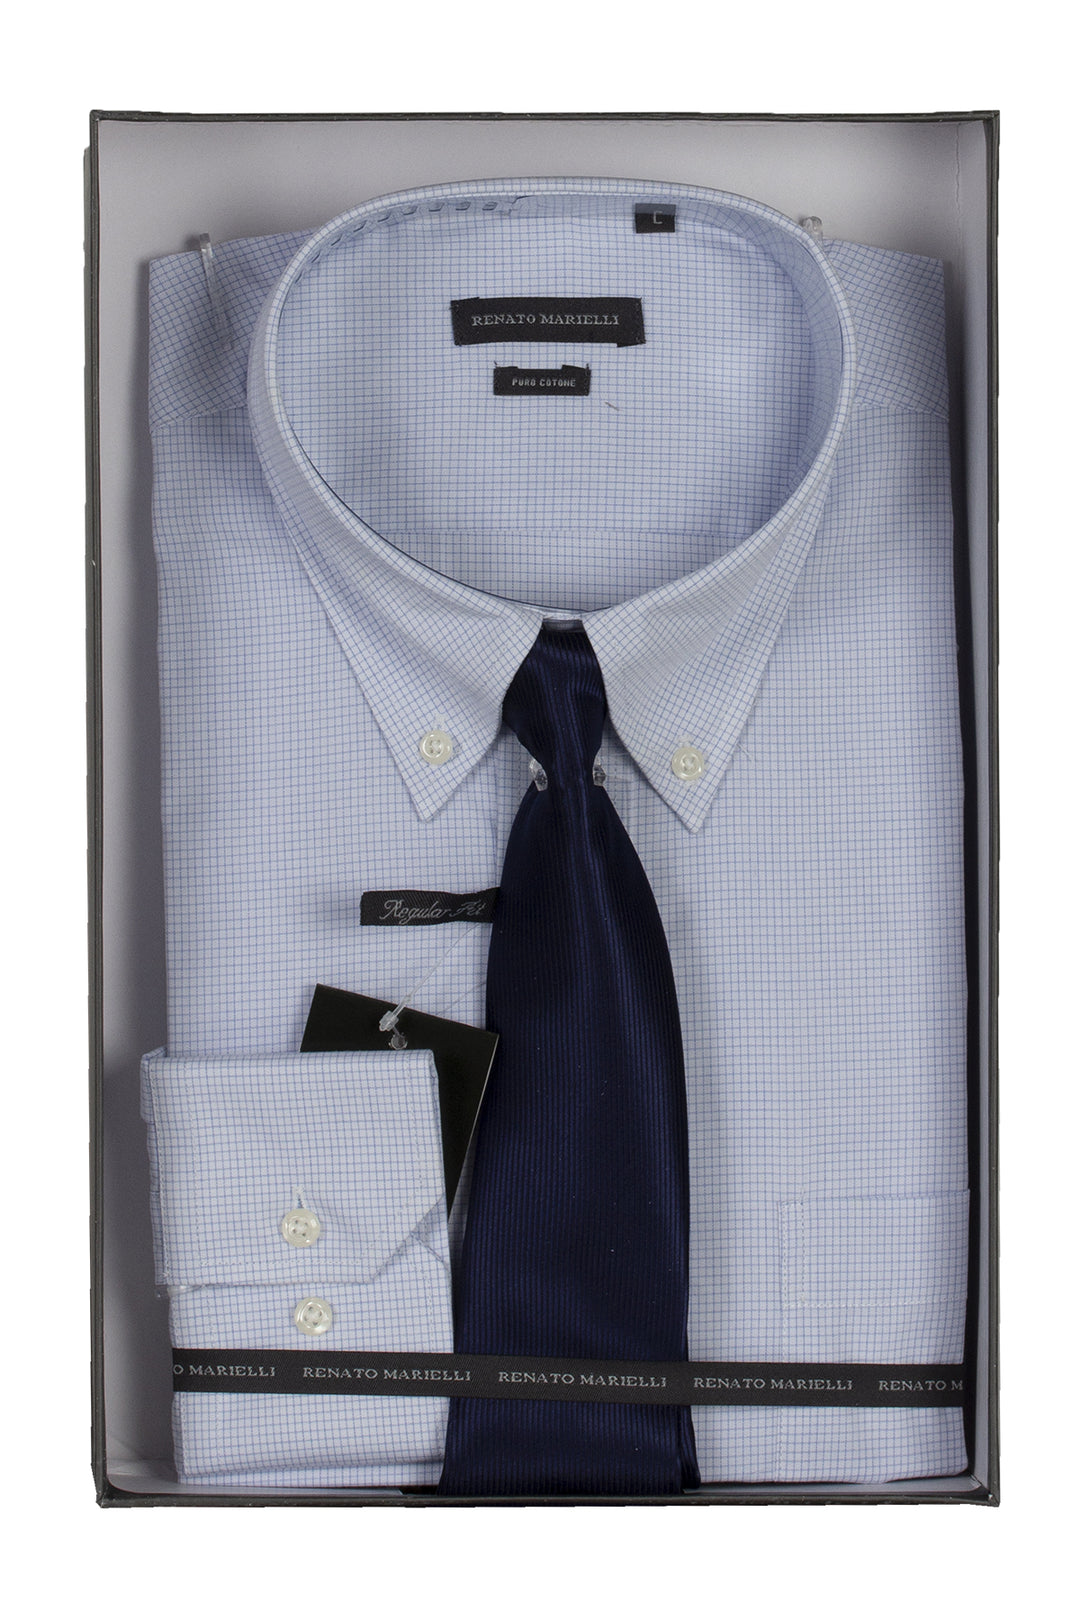 Camicia classica da uomo cielo con cravatta in scatola regalo